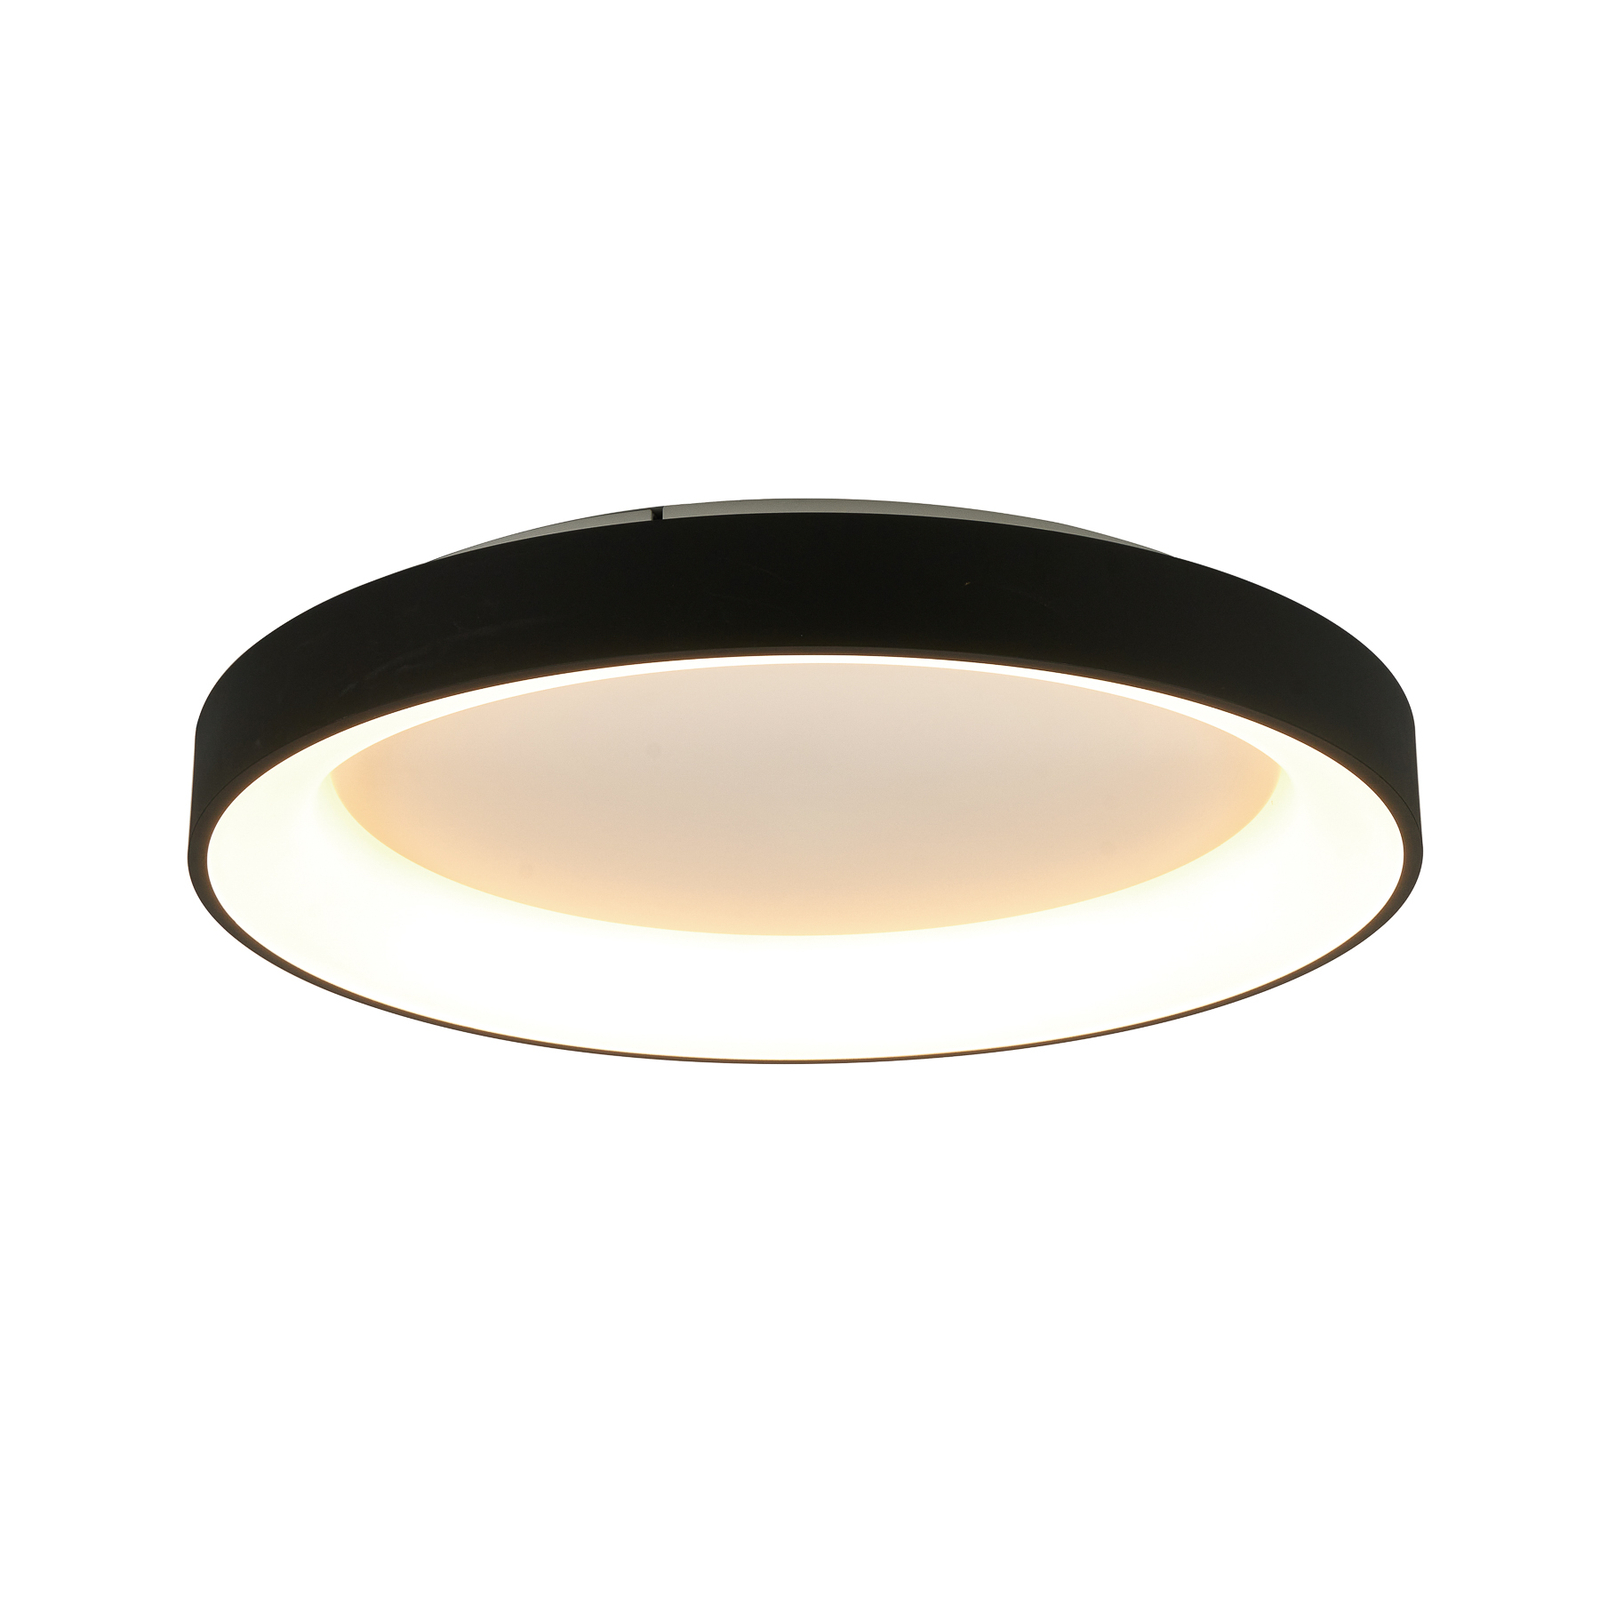 Plafondlamp Niseko II CCT afstandsbediening, Ø 50cm, zwart